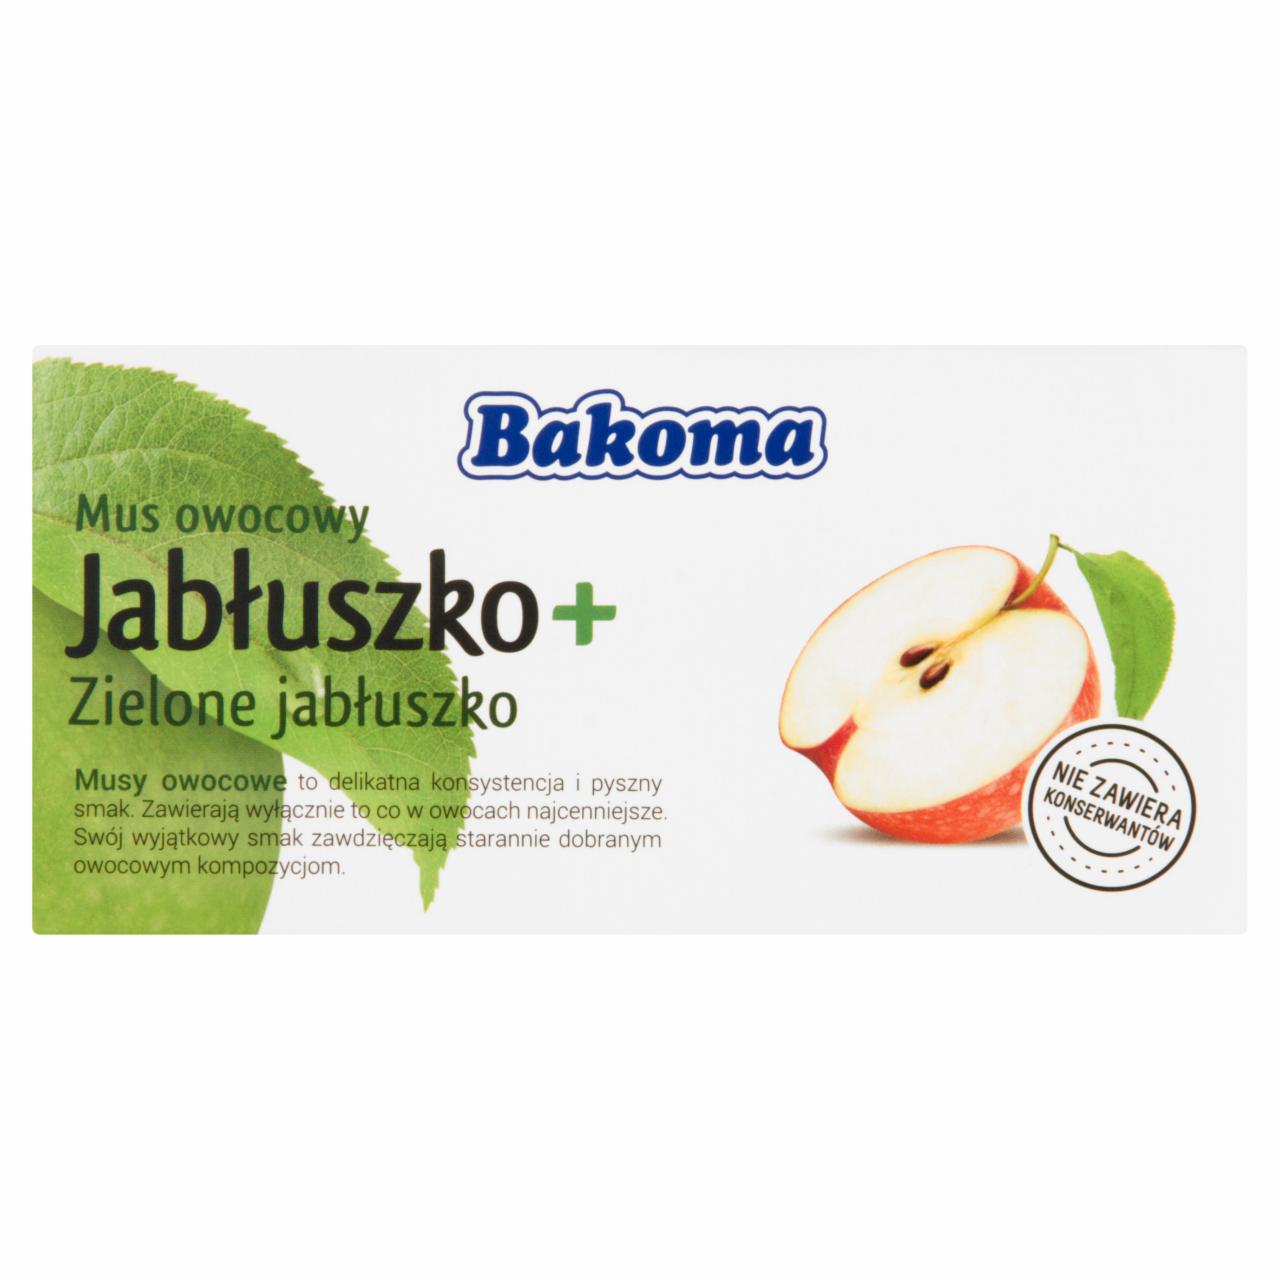 Zdjęcia - Bakoma Mus owocowy Jabłuszko + Zielone jabłuszko 200 g (2 sztuki)